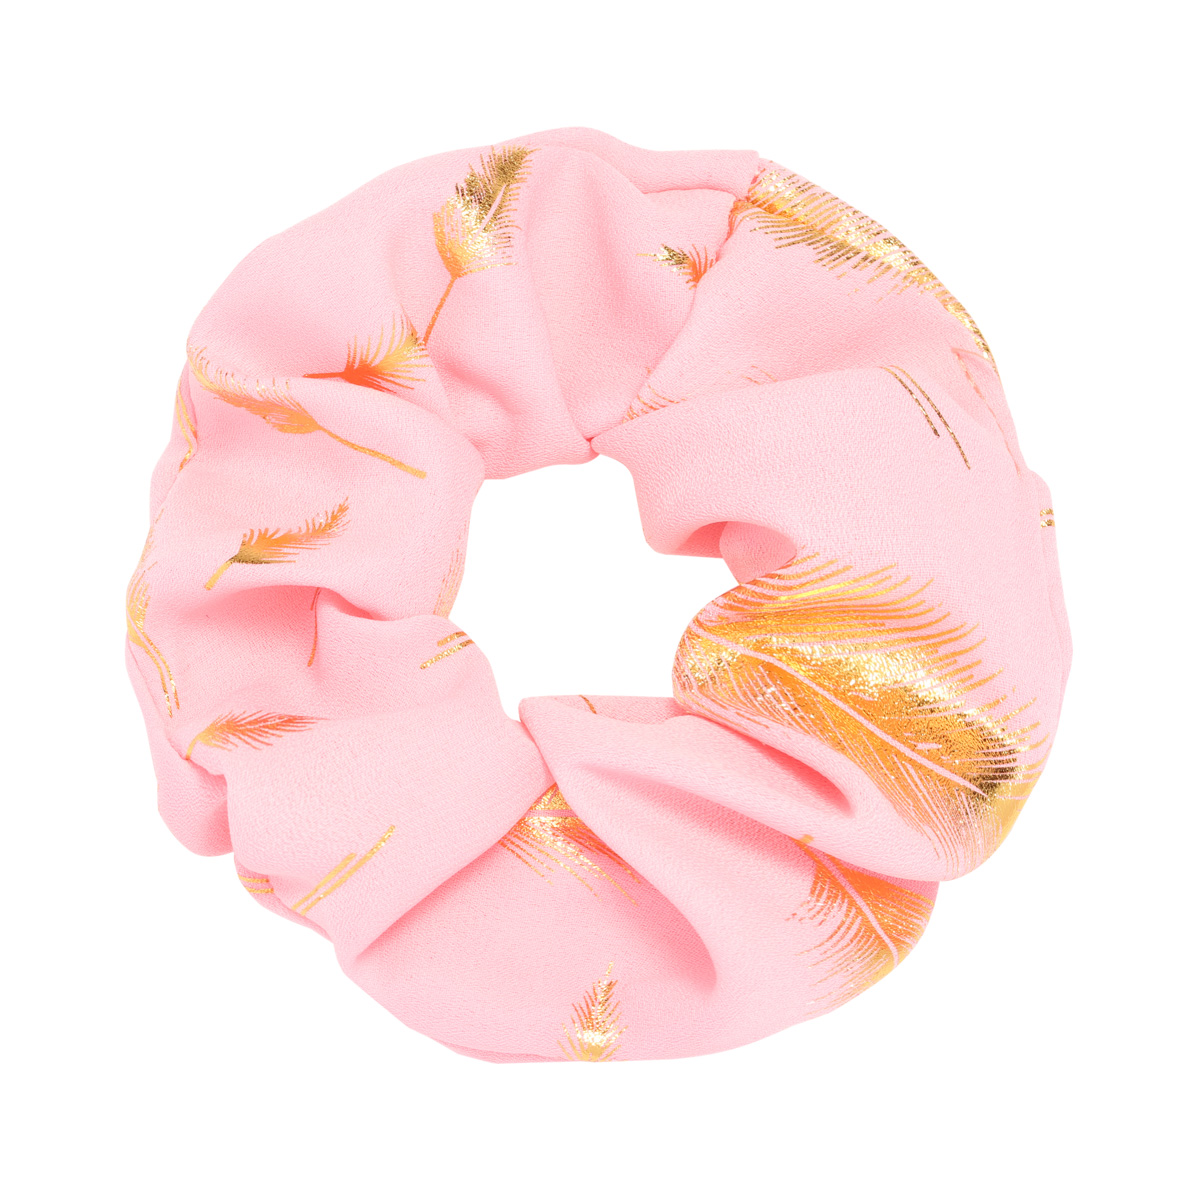 Scrunchie Golden Feather roze pink haarbanden gouden veren print dames haar accessoires kopen bestellen